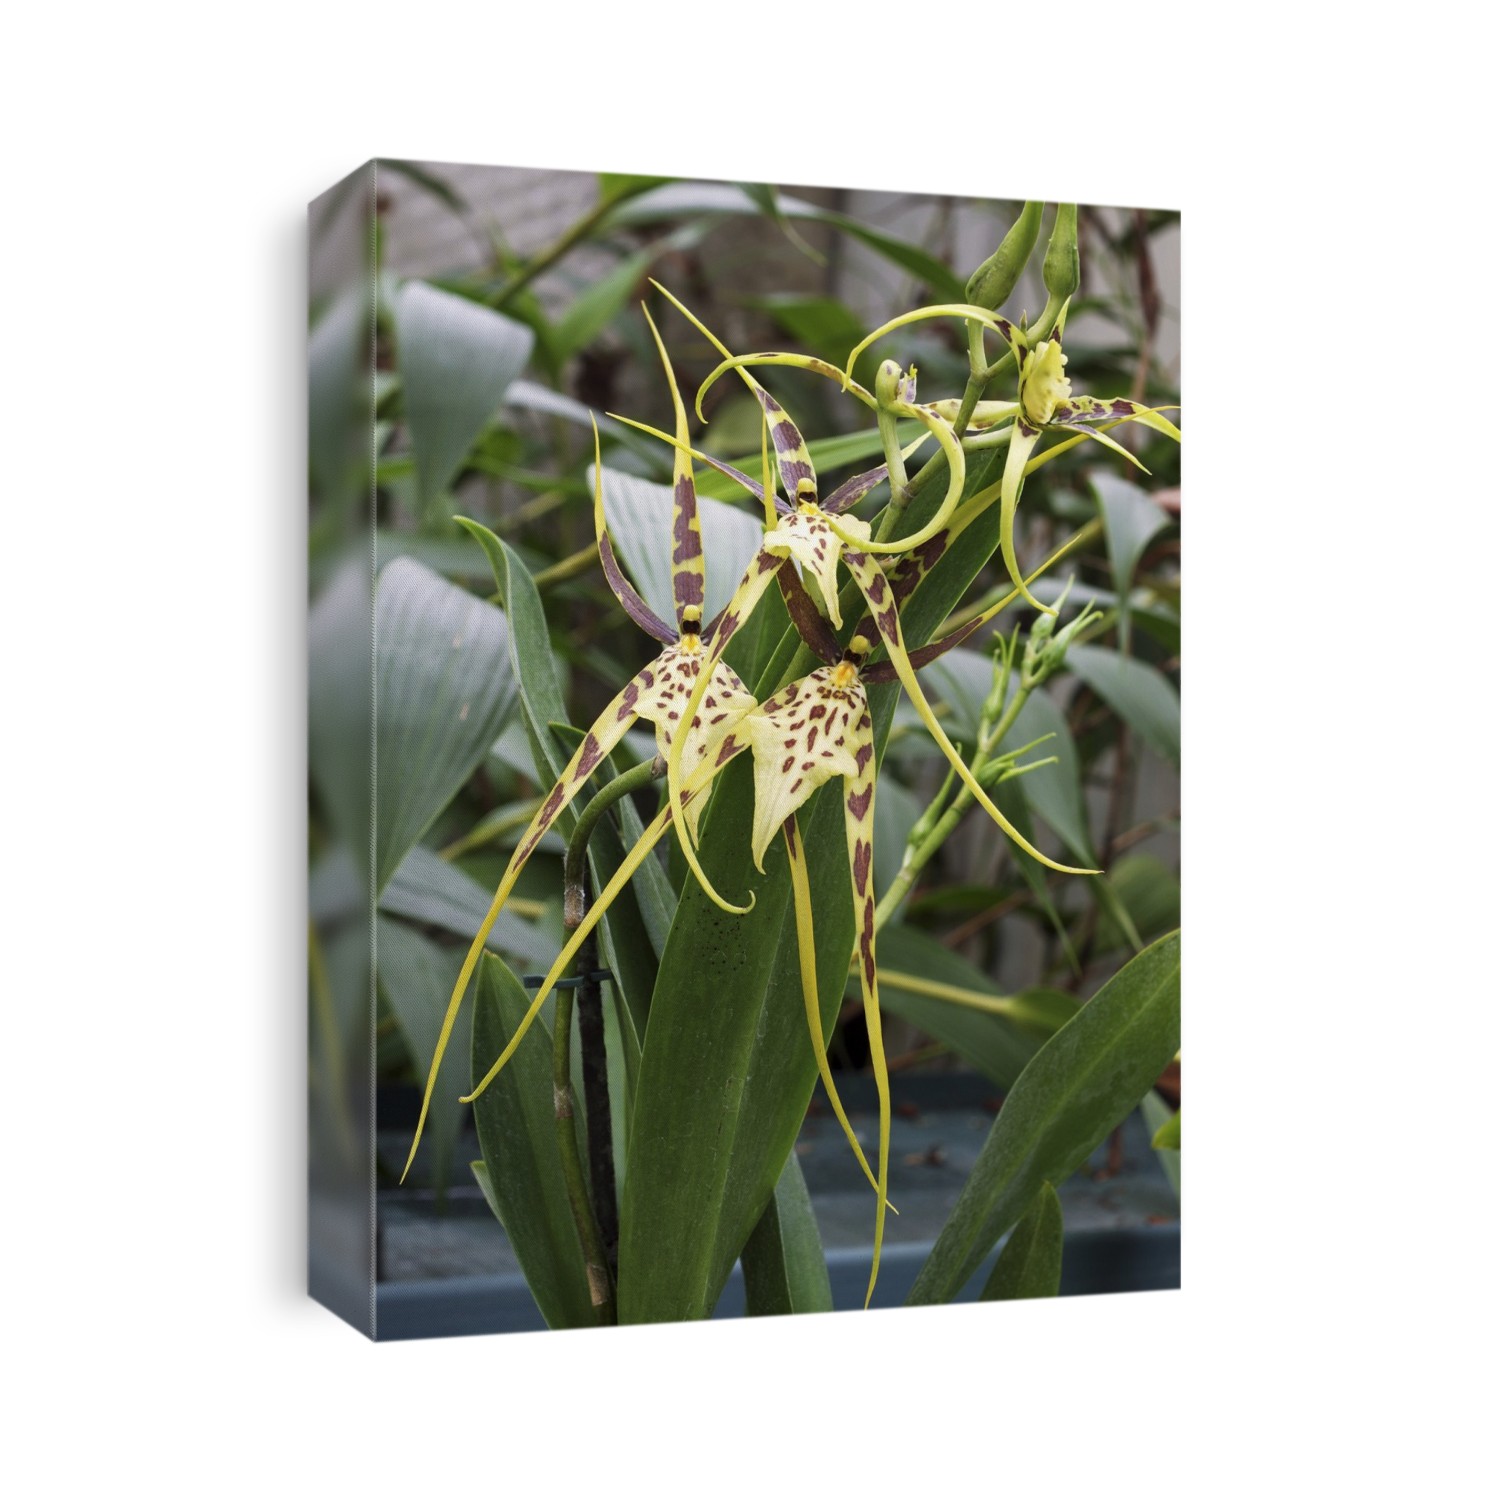 Spider orchid (Brassia Eternal Wind).